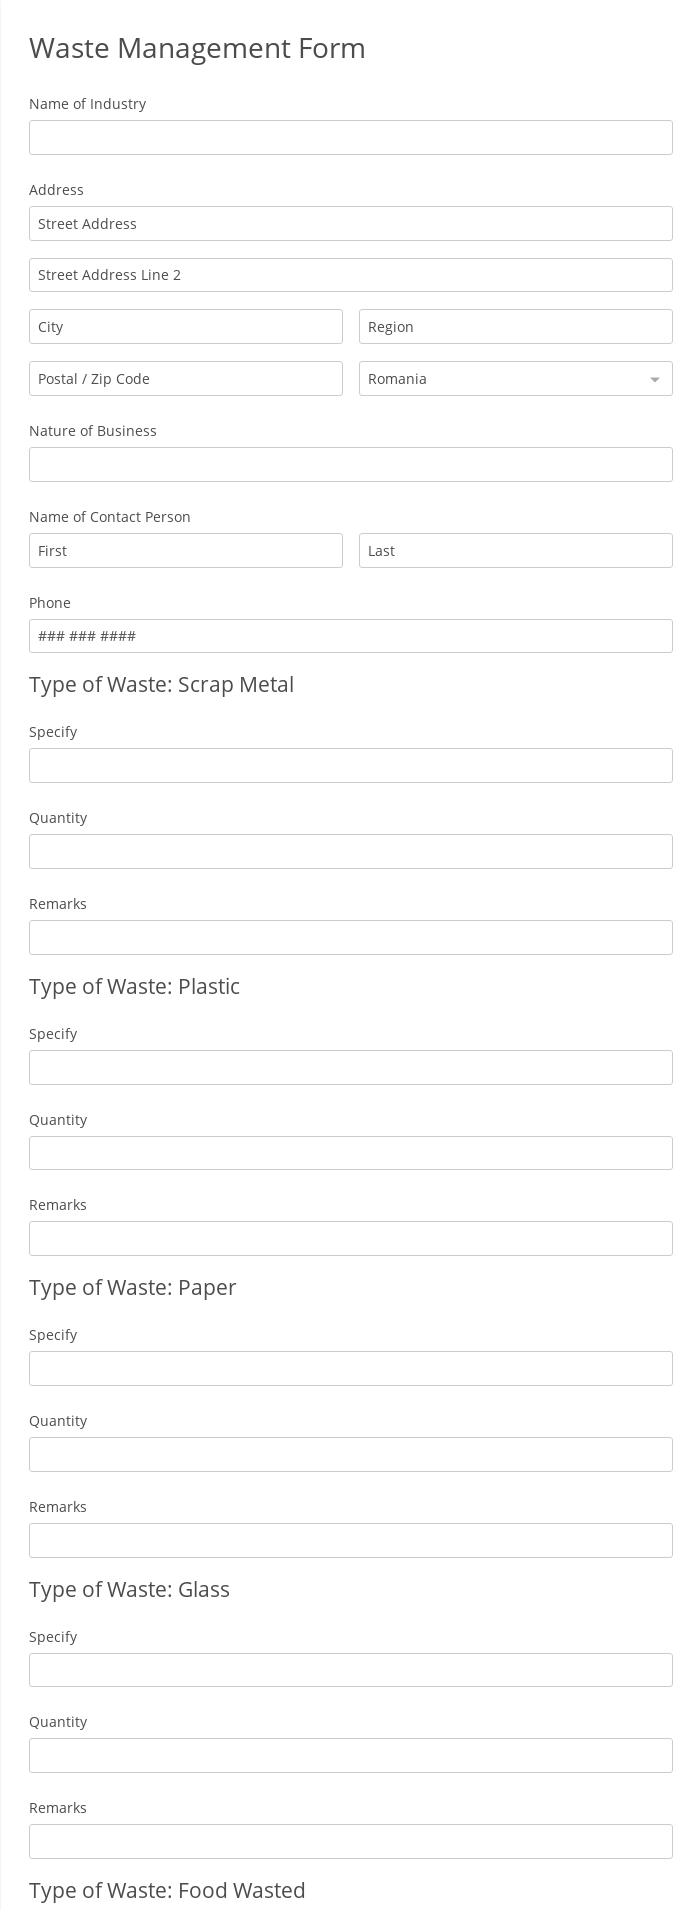 Waste Management Form